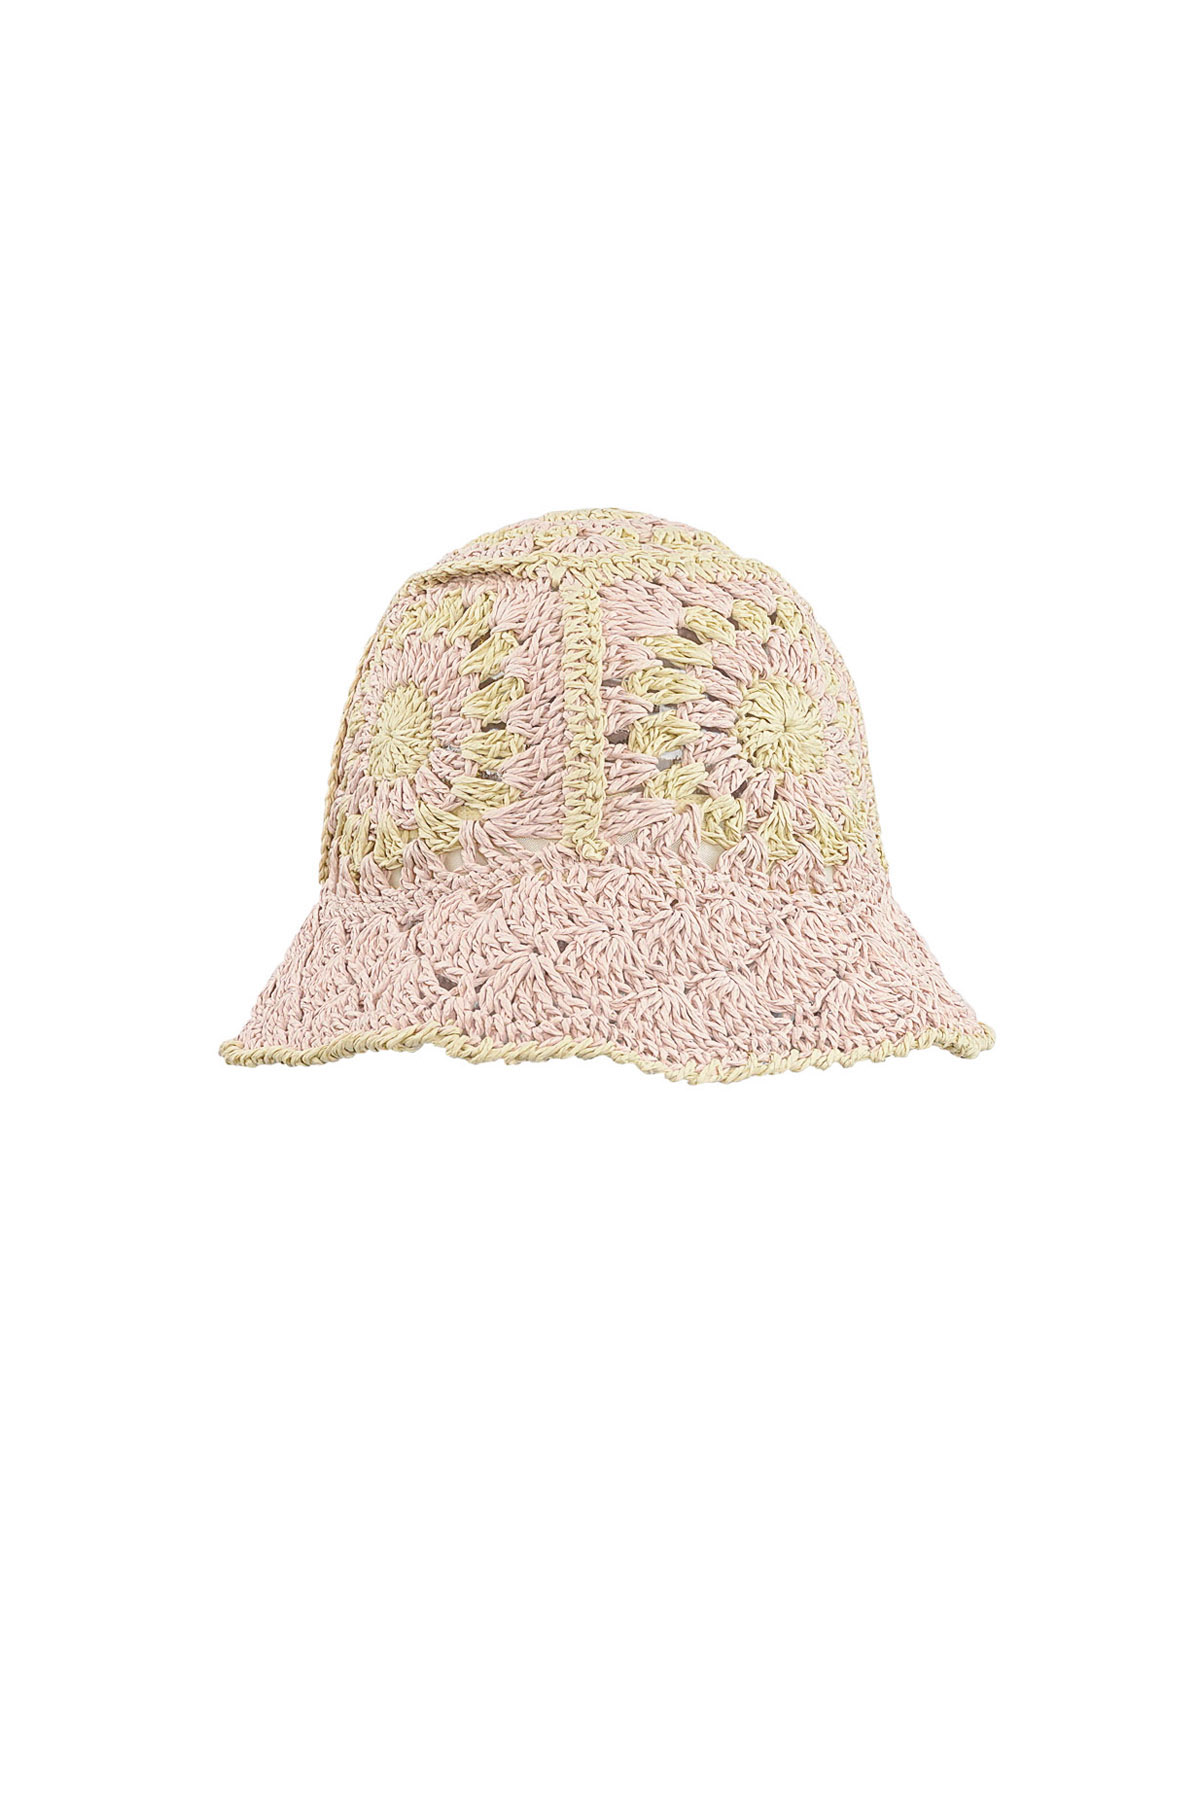 Crochet hoedje met bloemen - roze